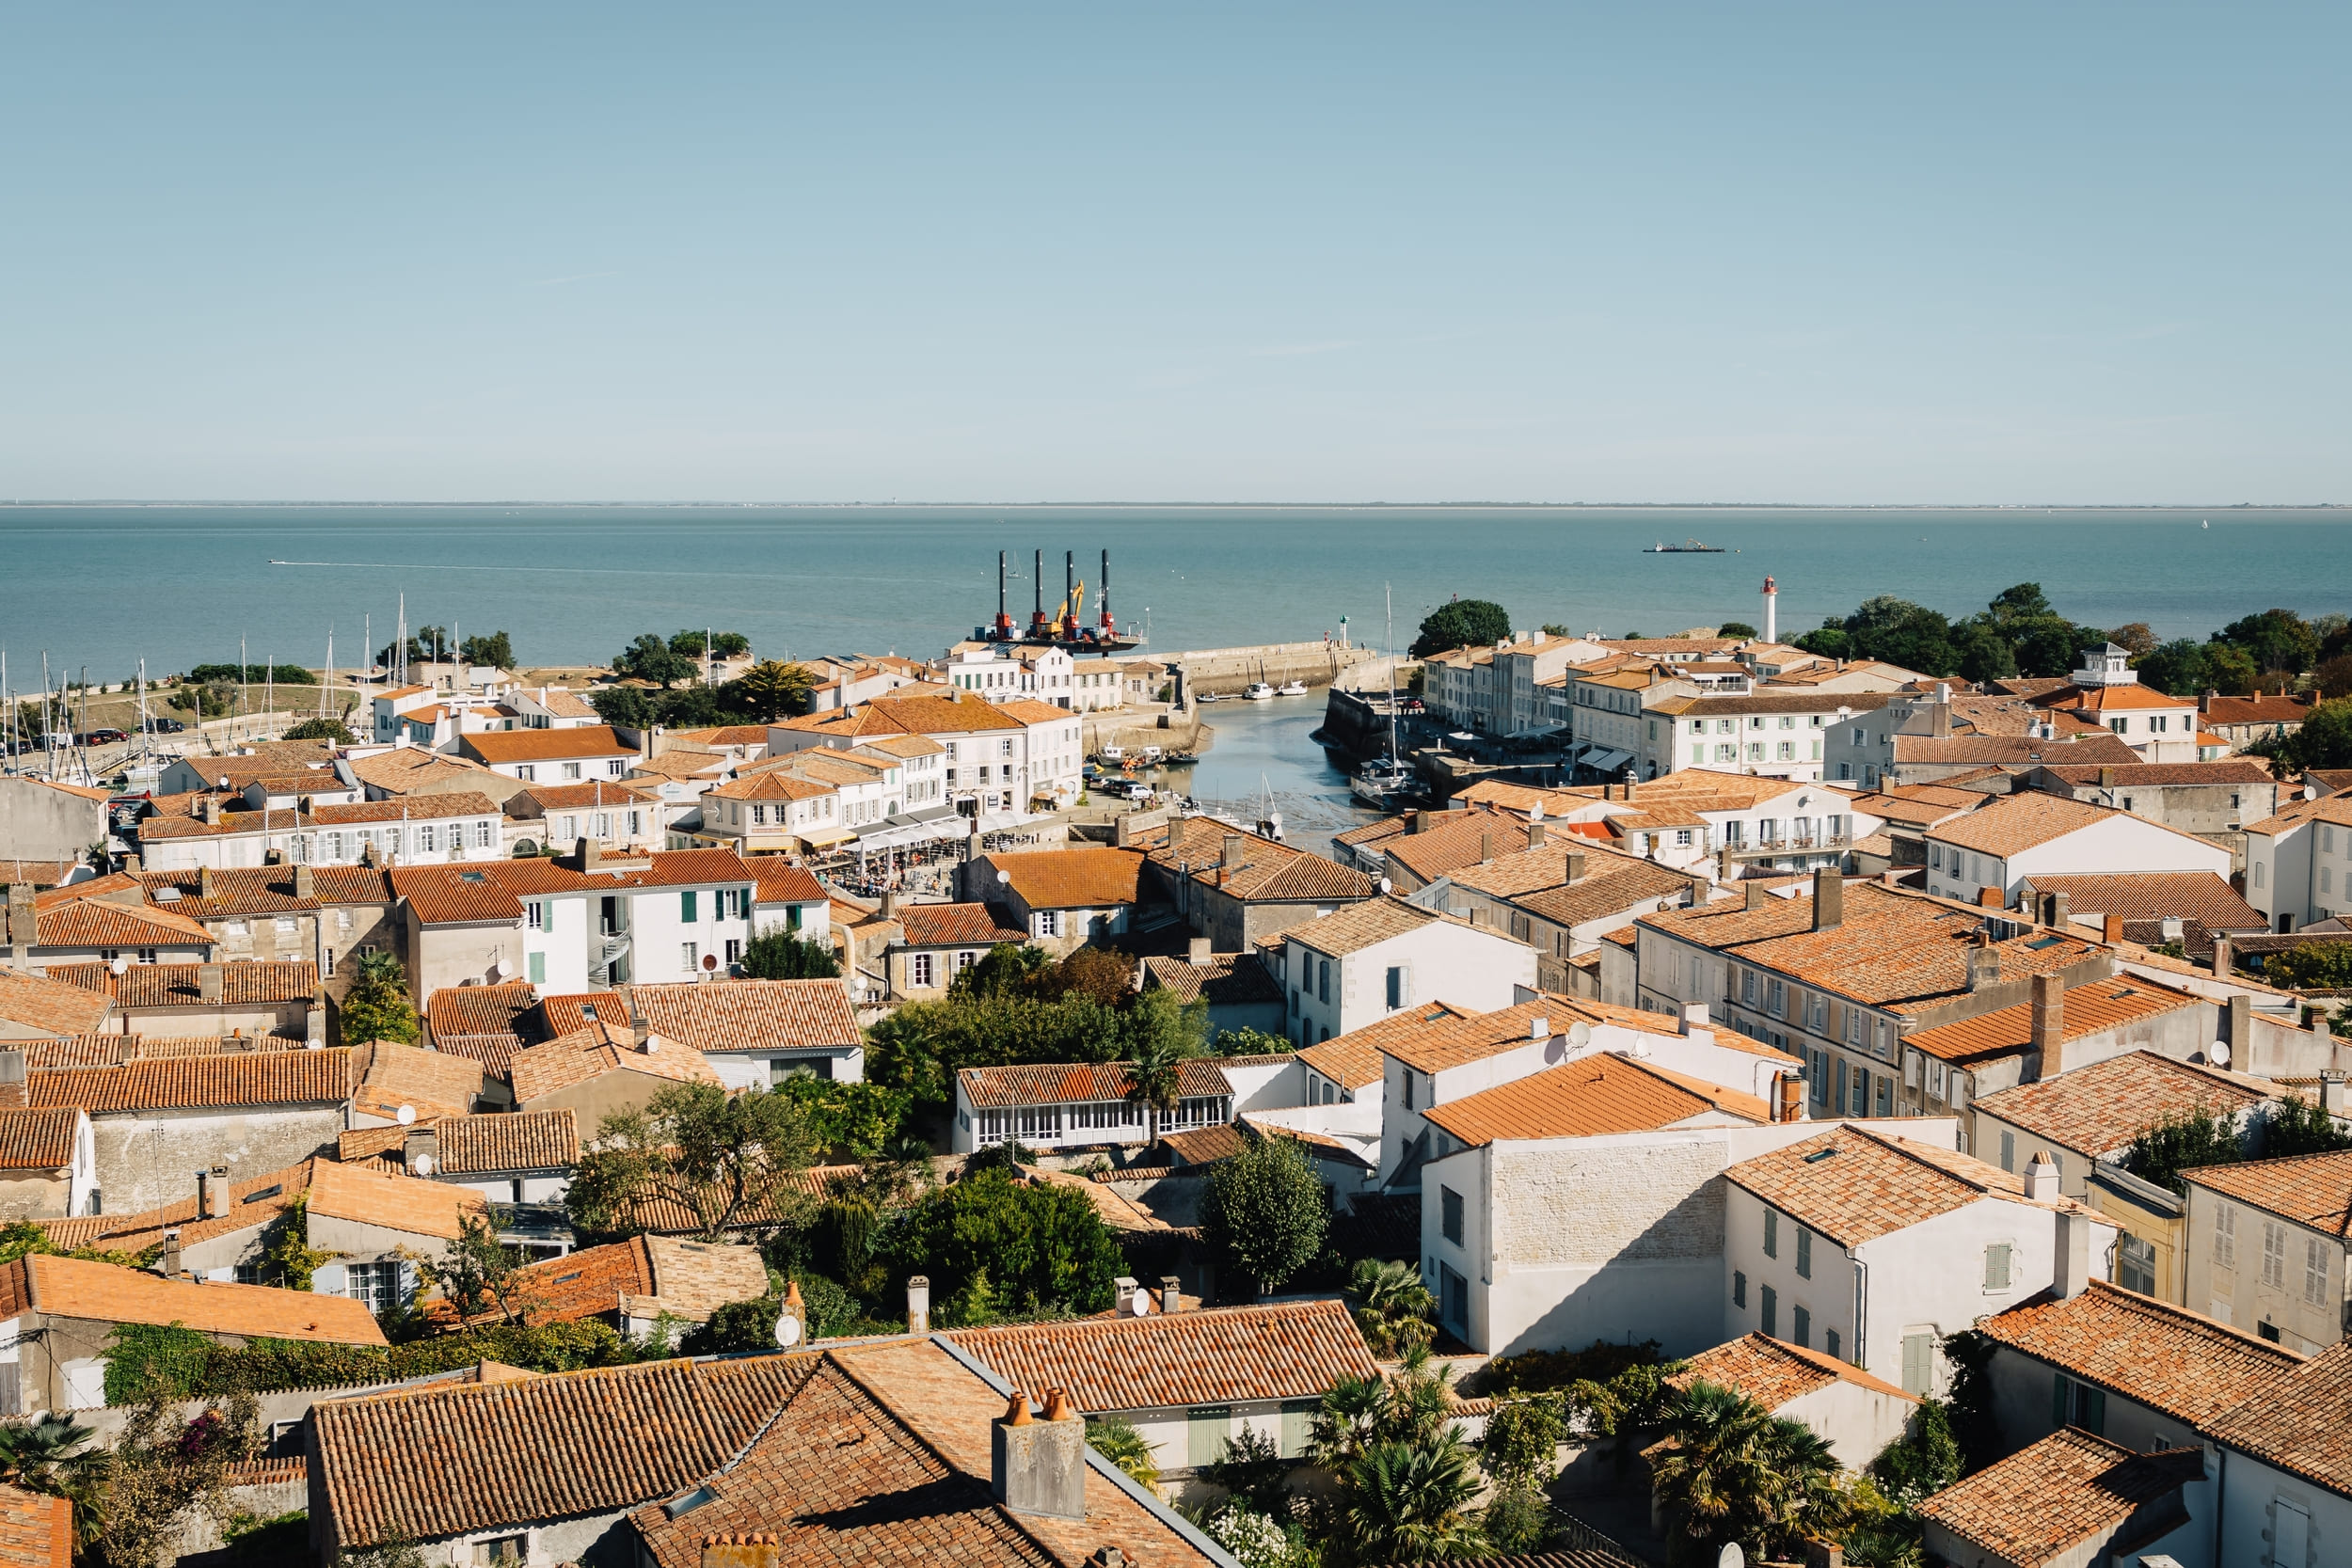 Pour endiguer le phénomène Airbnb, l'île de Ré a trouvé la solution : limiter le nombre de logements autorisés